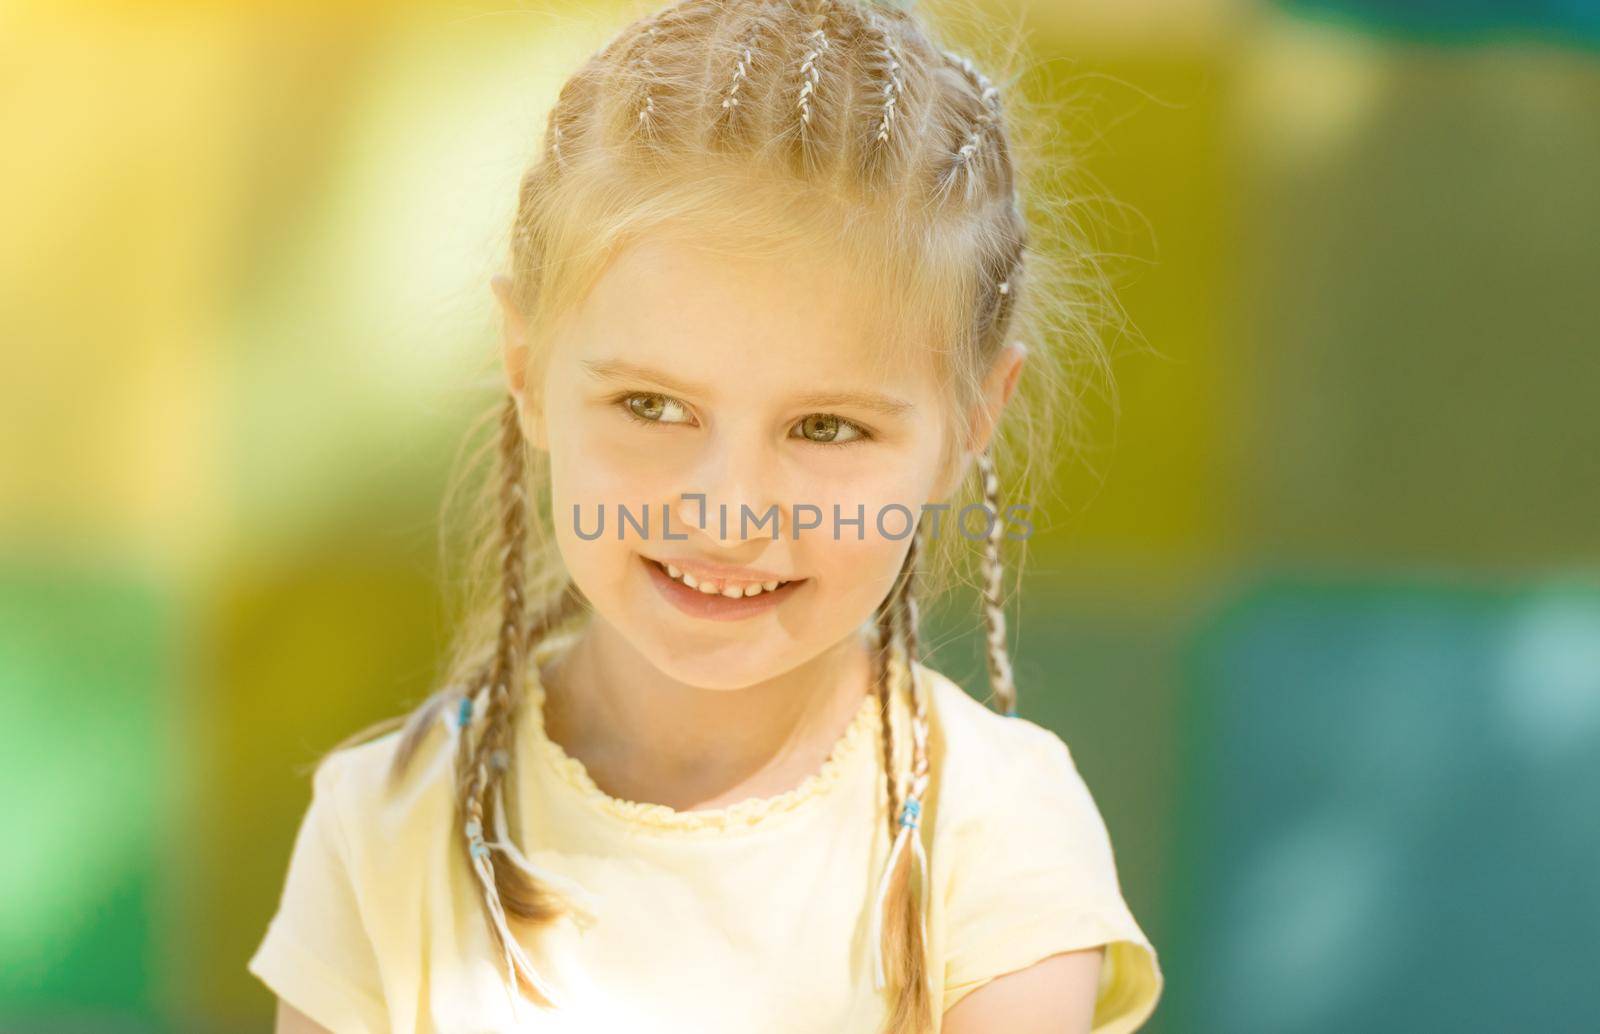 cute little girl smiling in the morning park by tan4ikk1